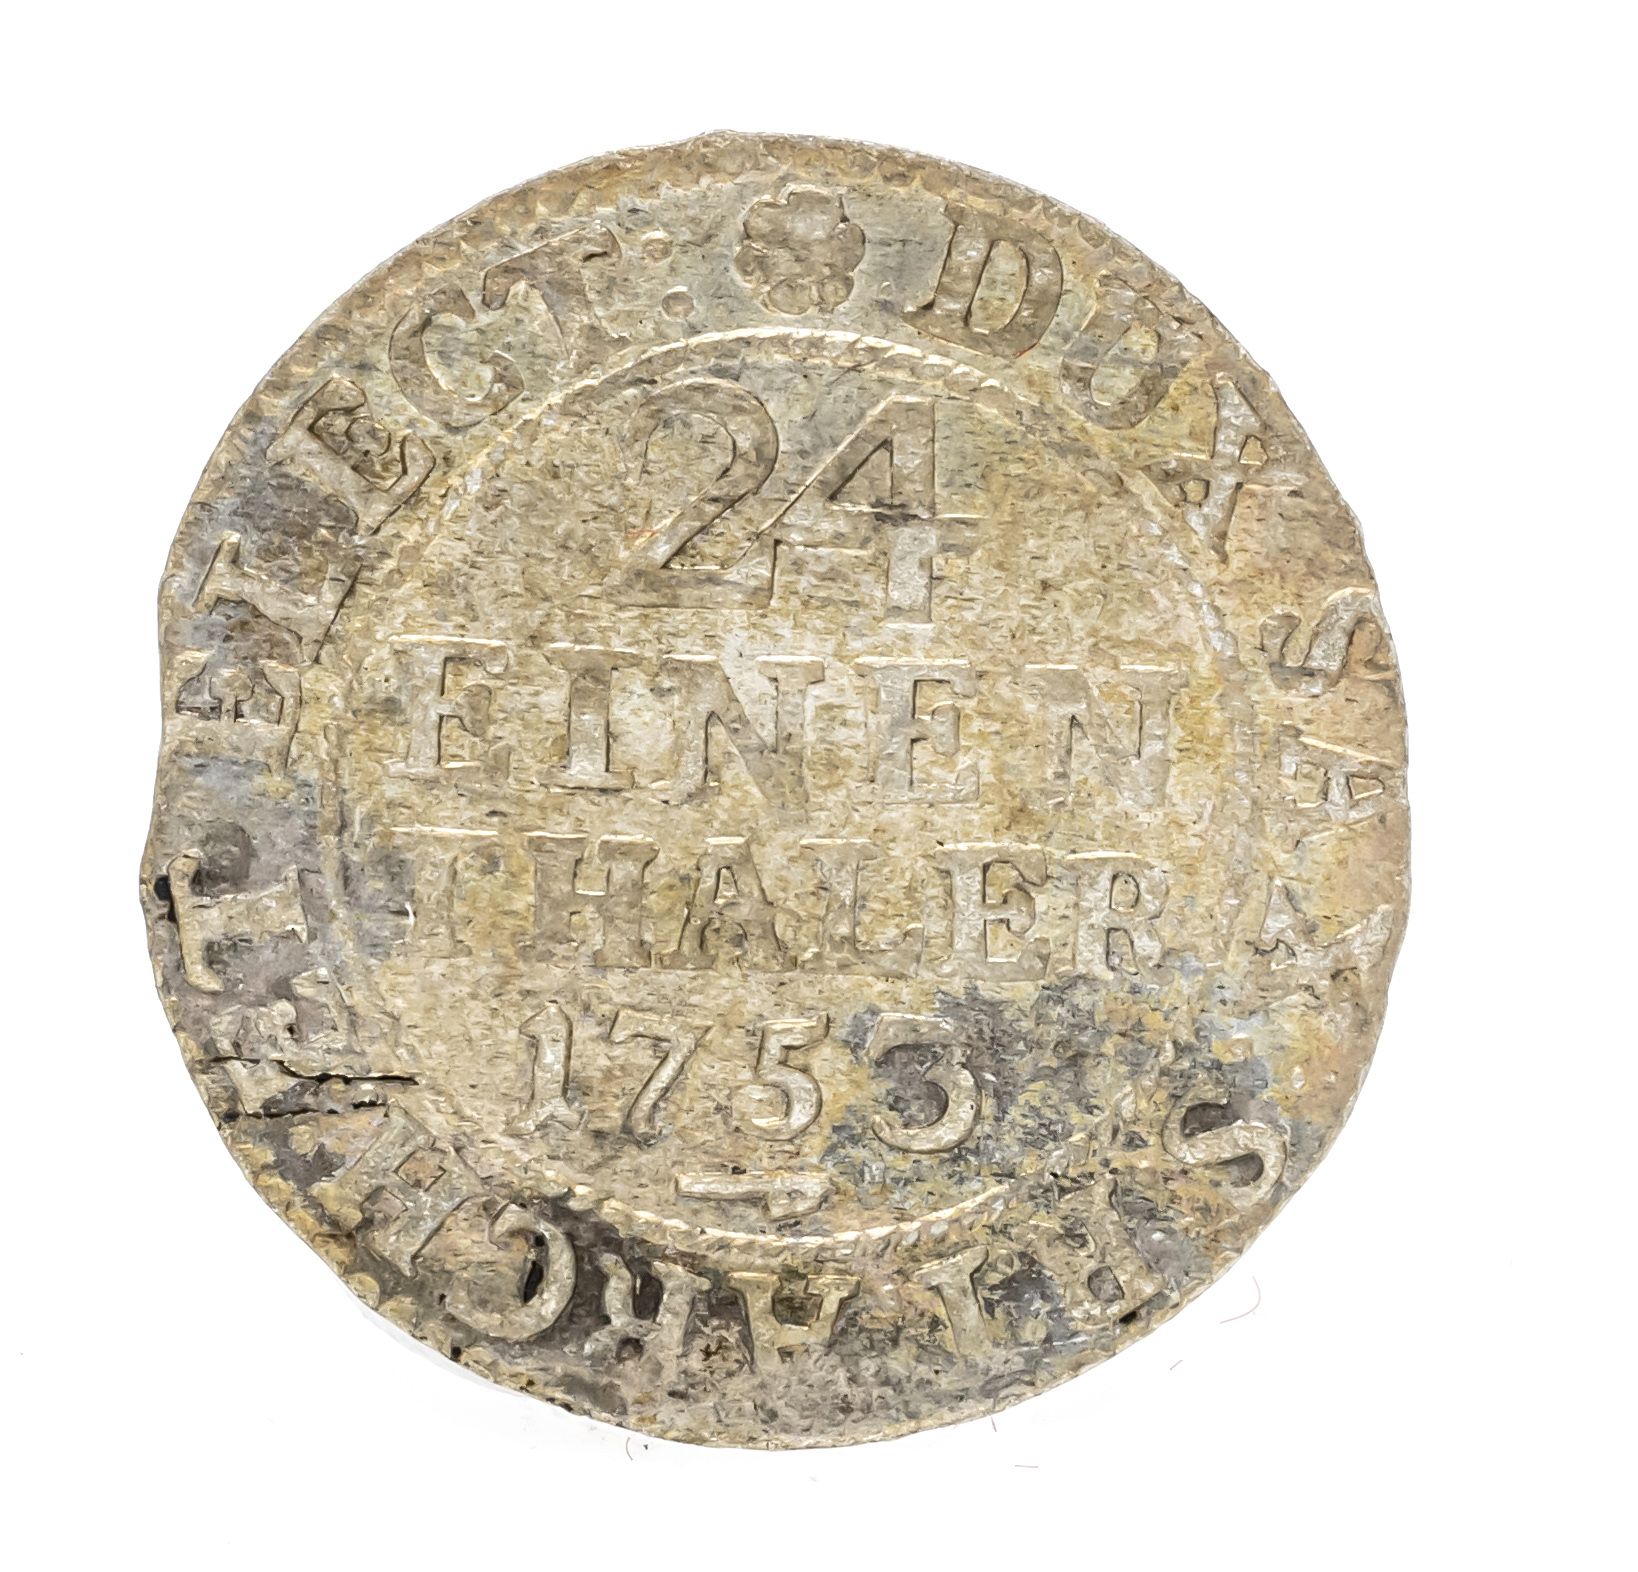 Null Monnaie, 24 un thaler, Saxe, 1753, 1,87g